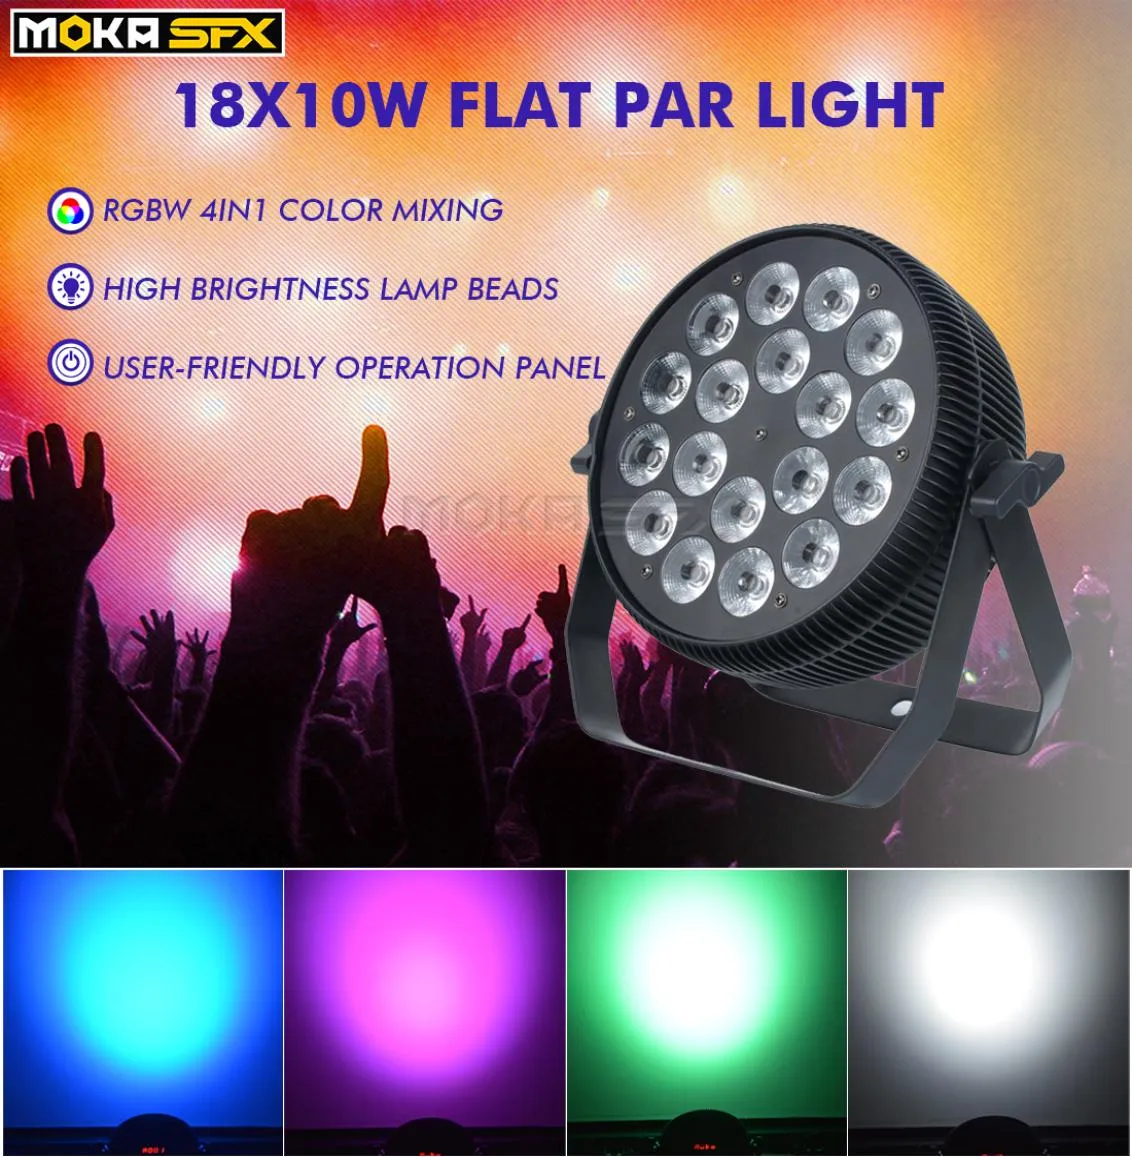 2 pcslot 1810 W LED Par lumière RGBW 4in1 Uplight pour plat Dj Par lumière scène lumières pour mariages discothèque Party7613582